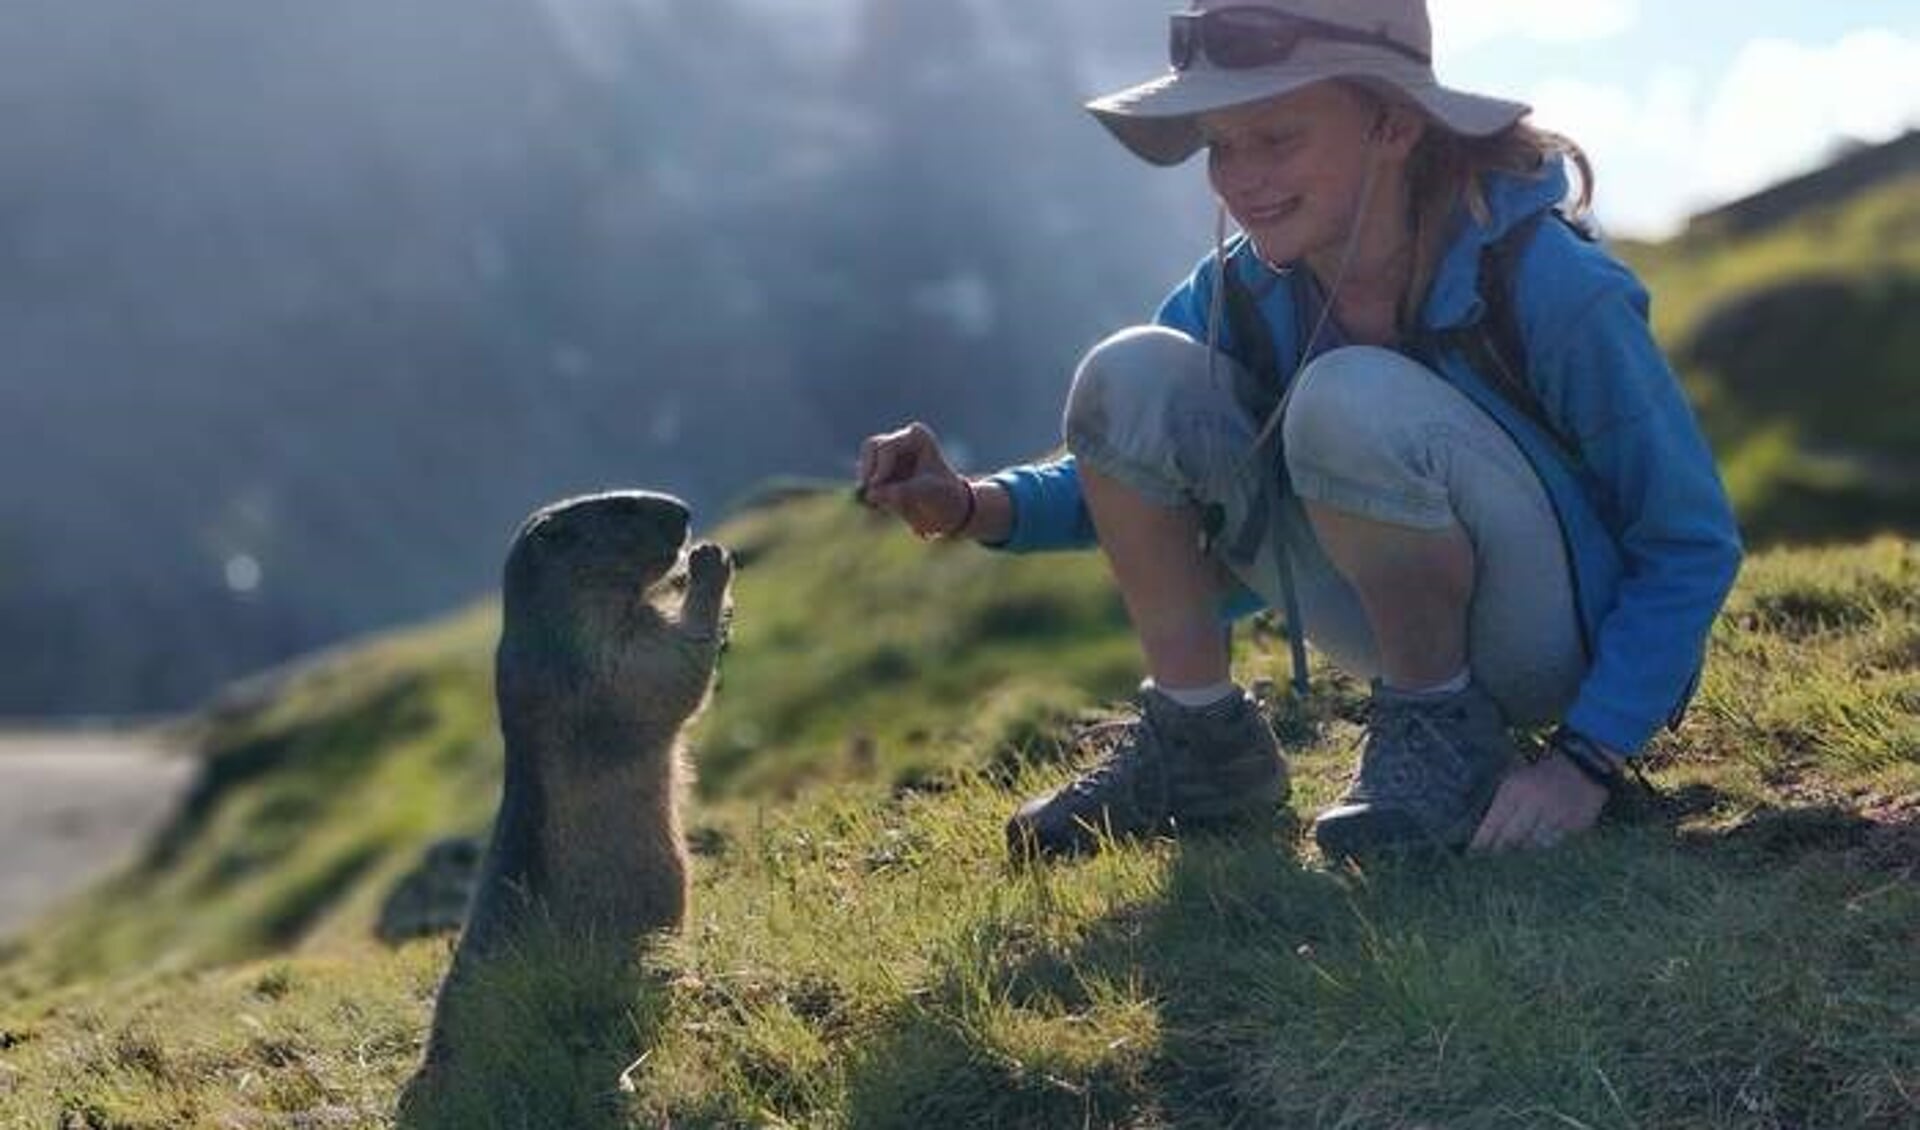 Wild schattig marmotje komt voorzichtig kijken bij onze dochter Cara. De foto is gemaakt in Oostenrijk, bij de Grossglokcner gletsjer 